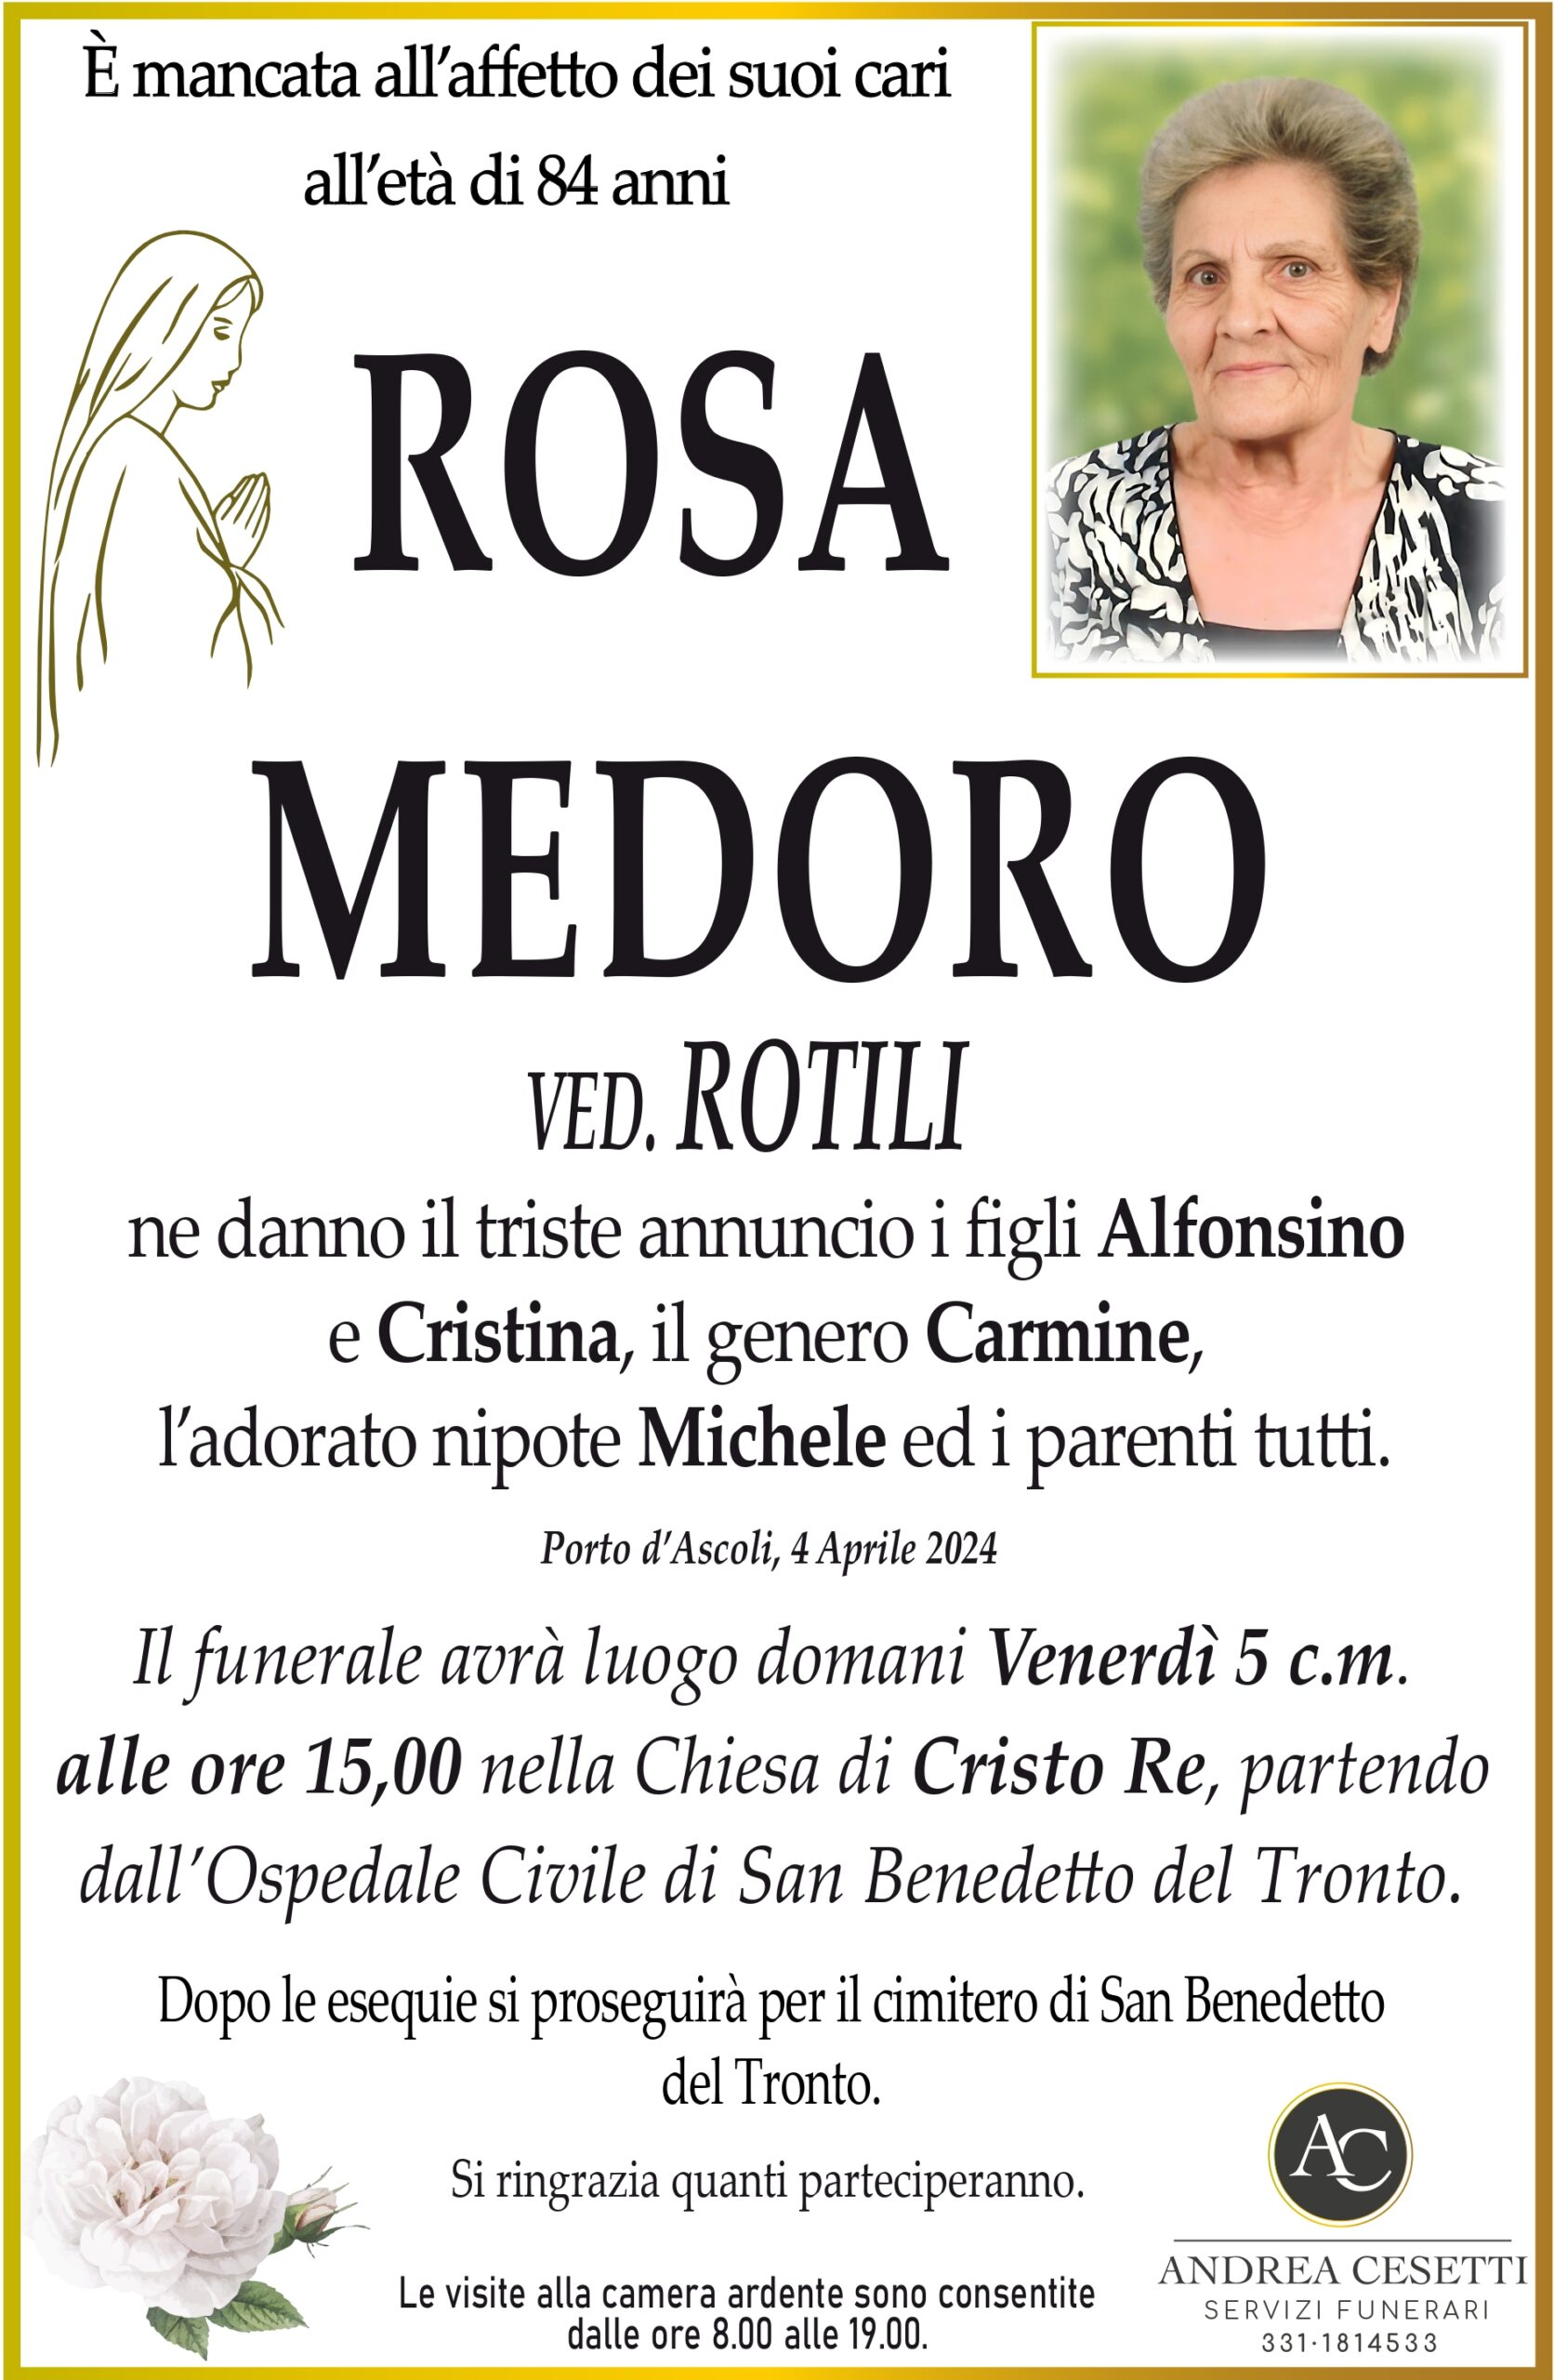 Rosa Medoro